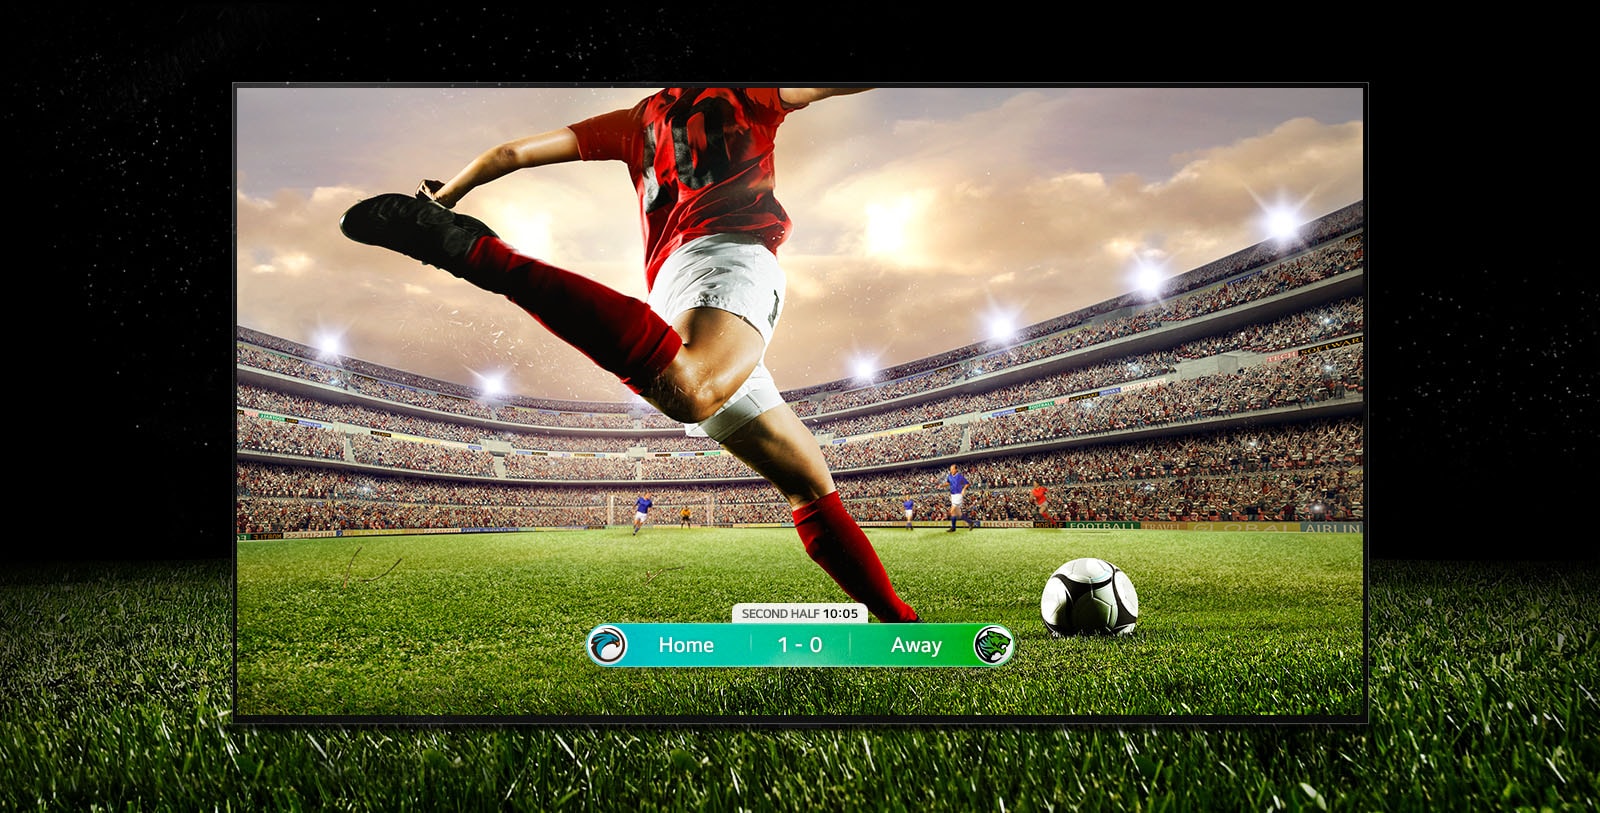 Скриншот футбольного матча, на котором игрок готовится перебросить мяч через стадион.  В нижней части экрана вы можете увидеть текущий счет.  Зеленая трава поля выходит за пределы экрана черной тенью.